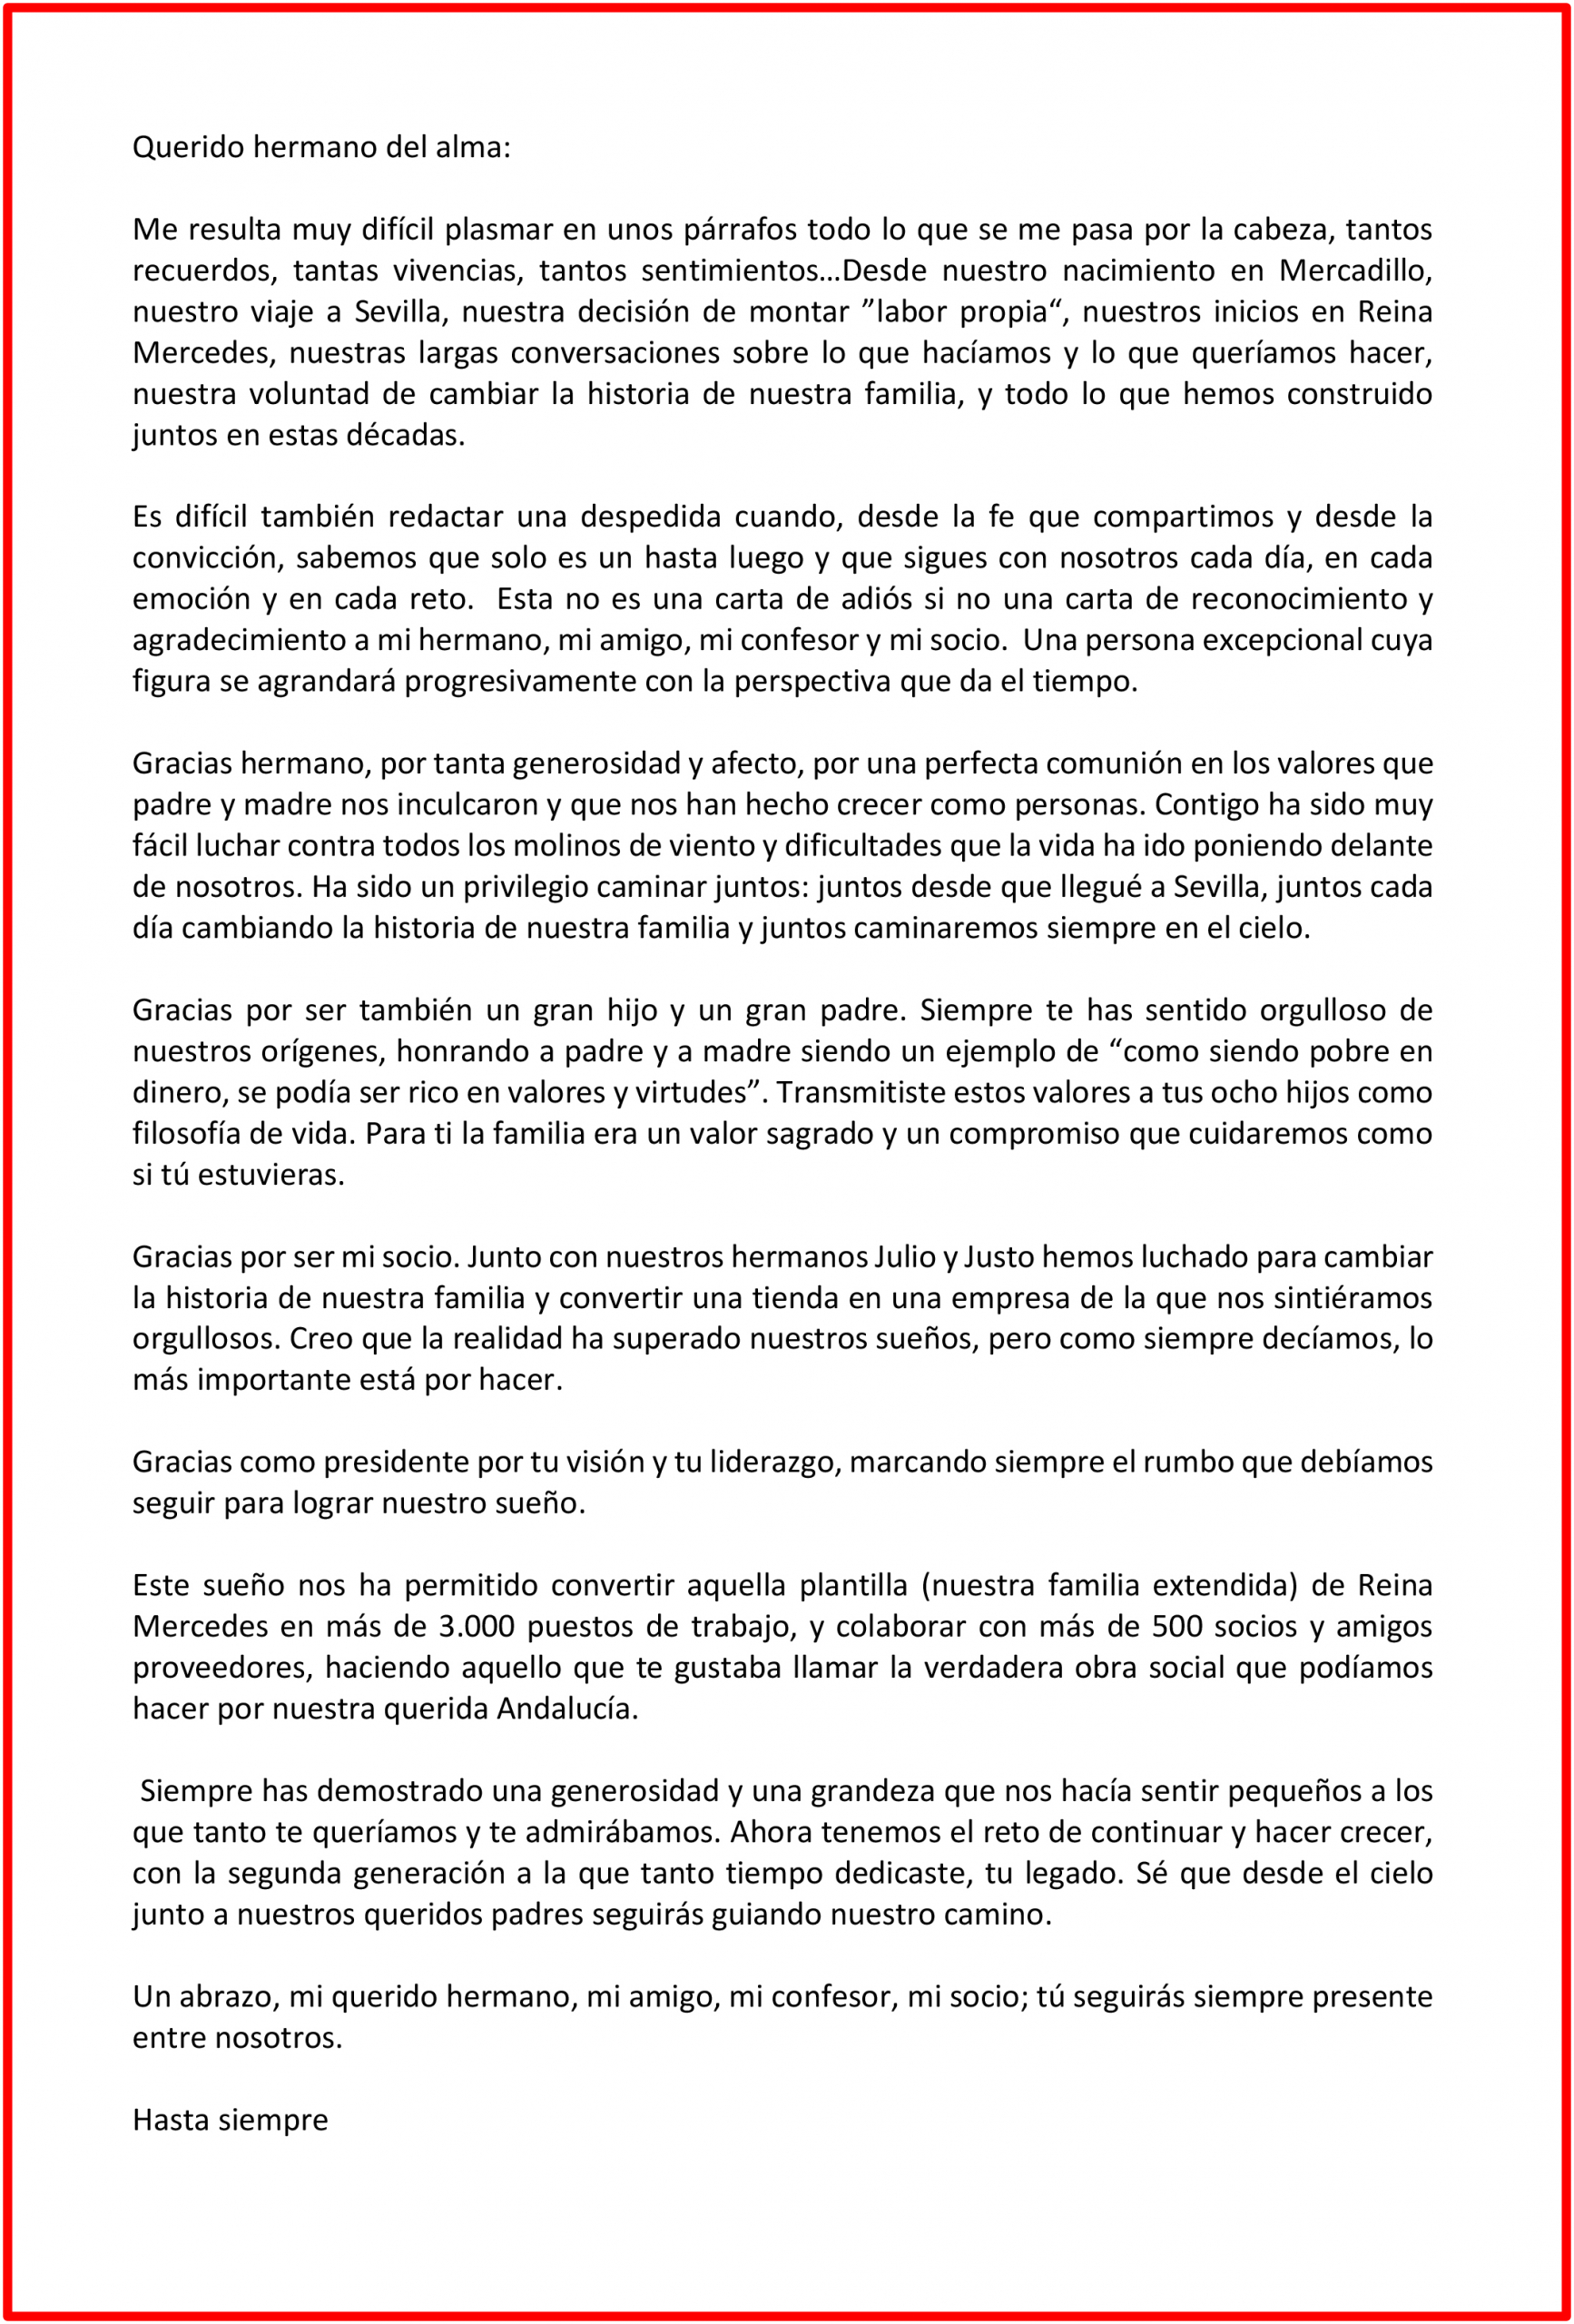 Agradecimiento y carta de Vicente Martín - Grupo MAS